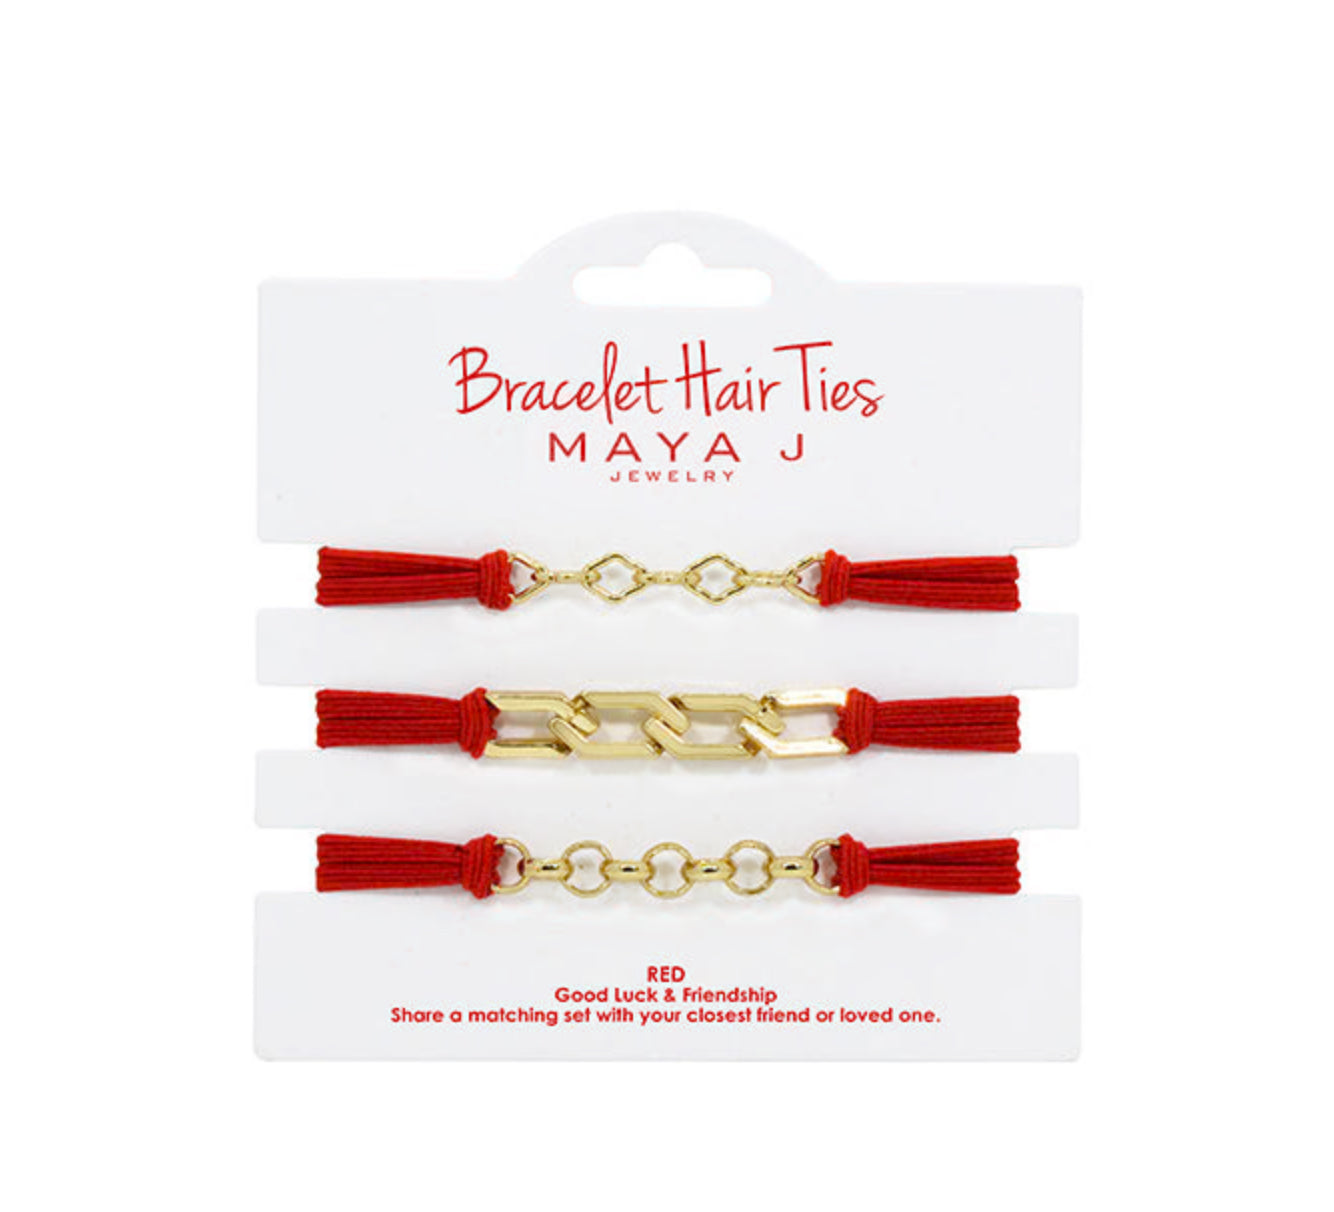 Bracelet hair ties